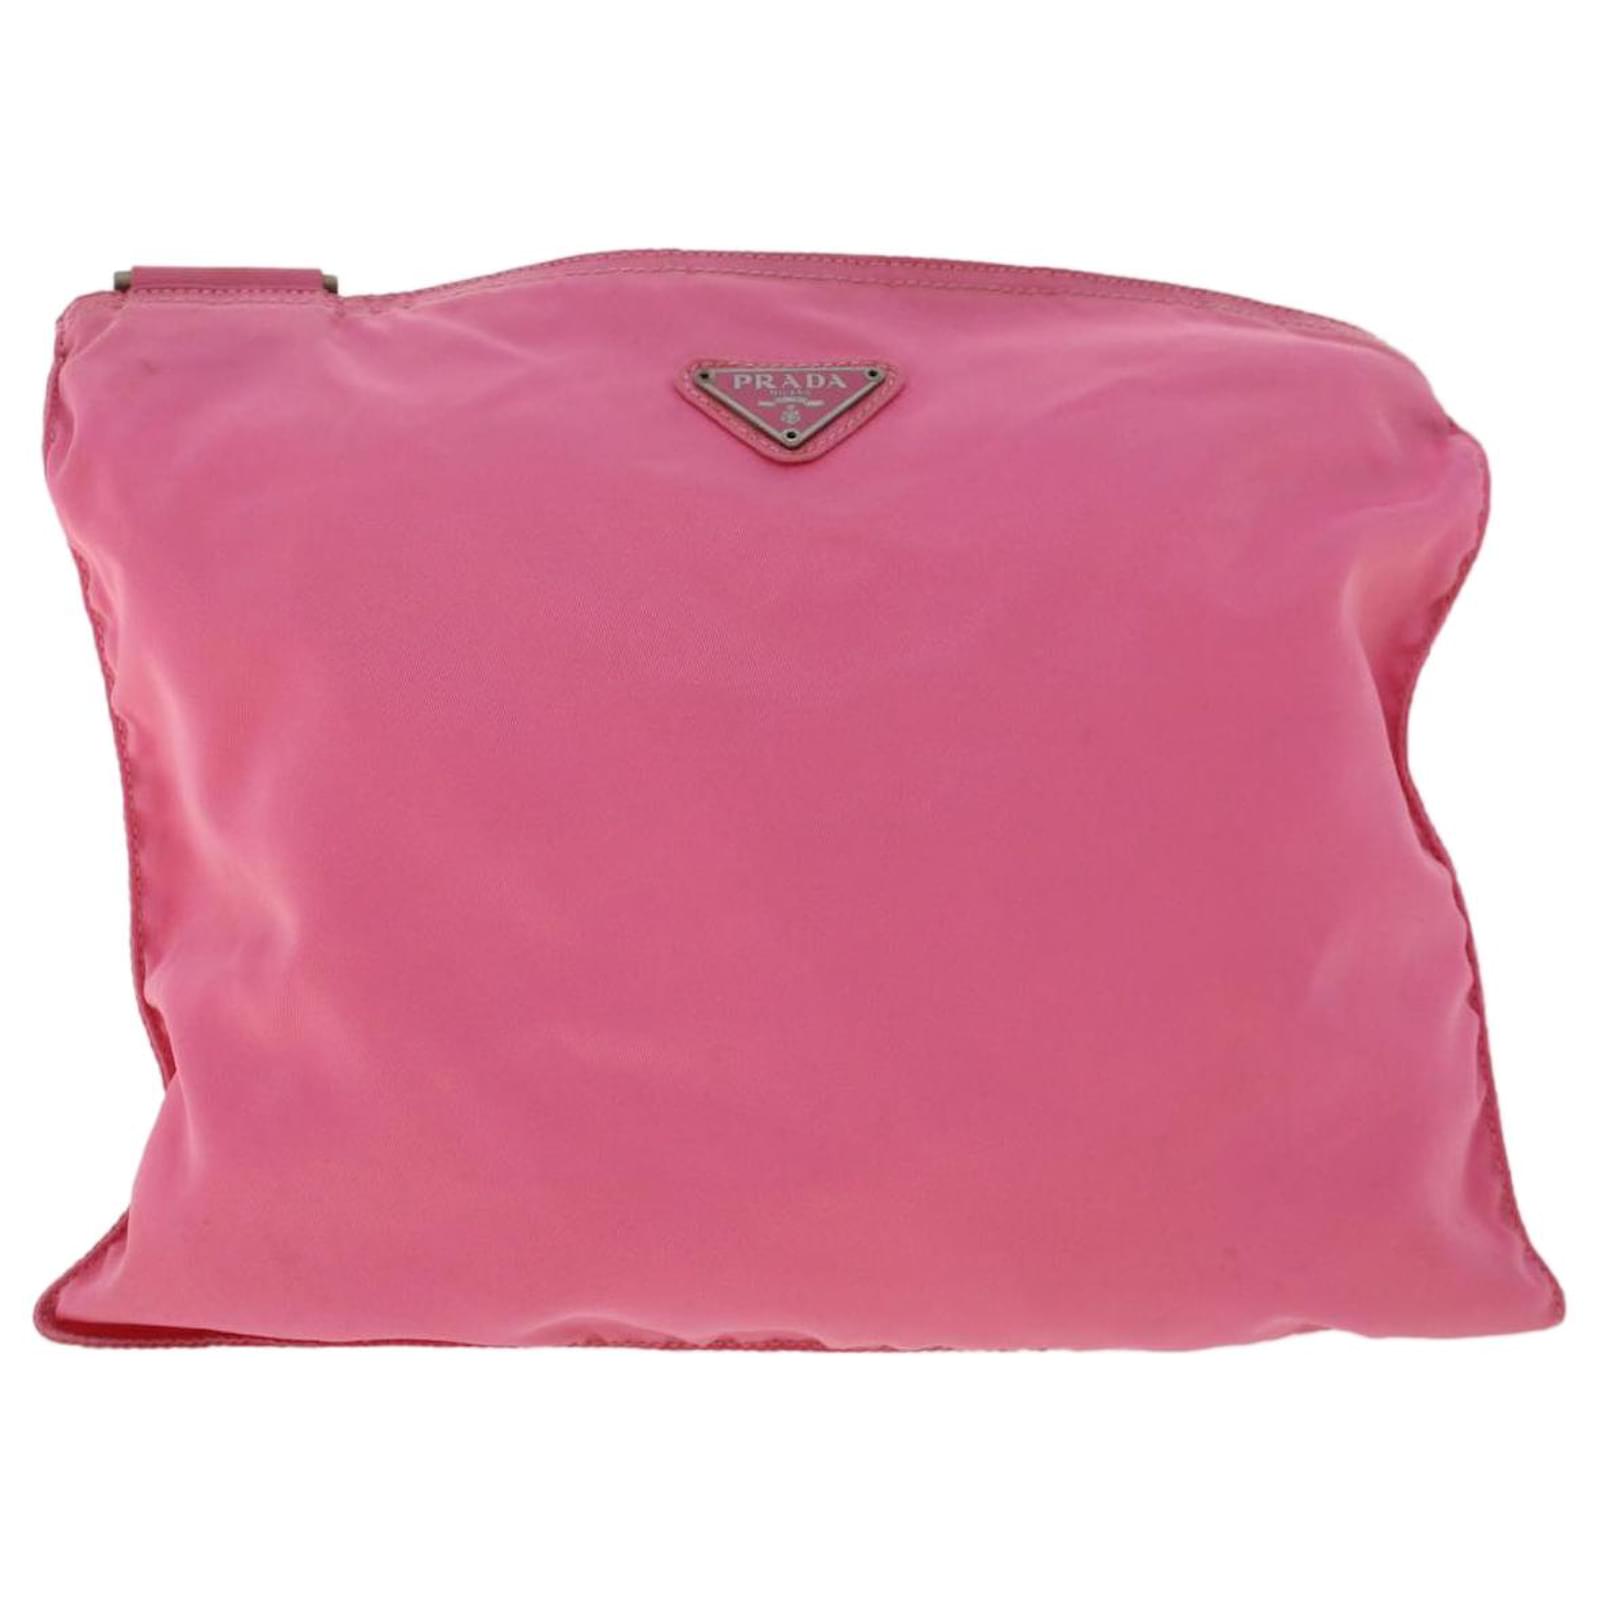 Prada, Bags, Prada Pink Nylon Sling Bag